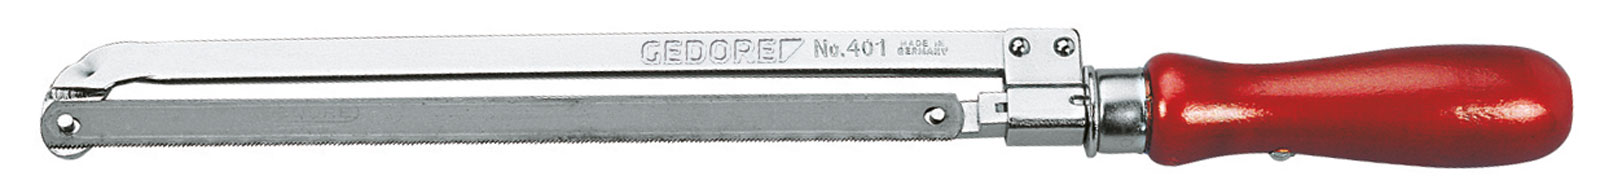 Picture of 401 Metallsäge